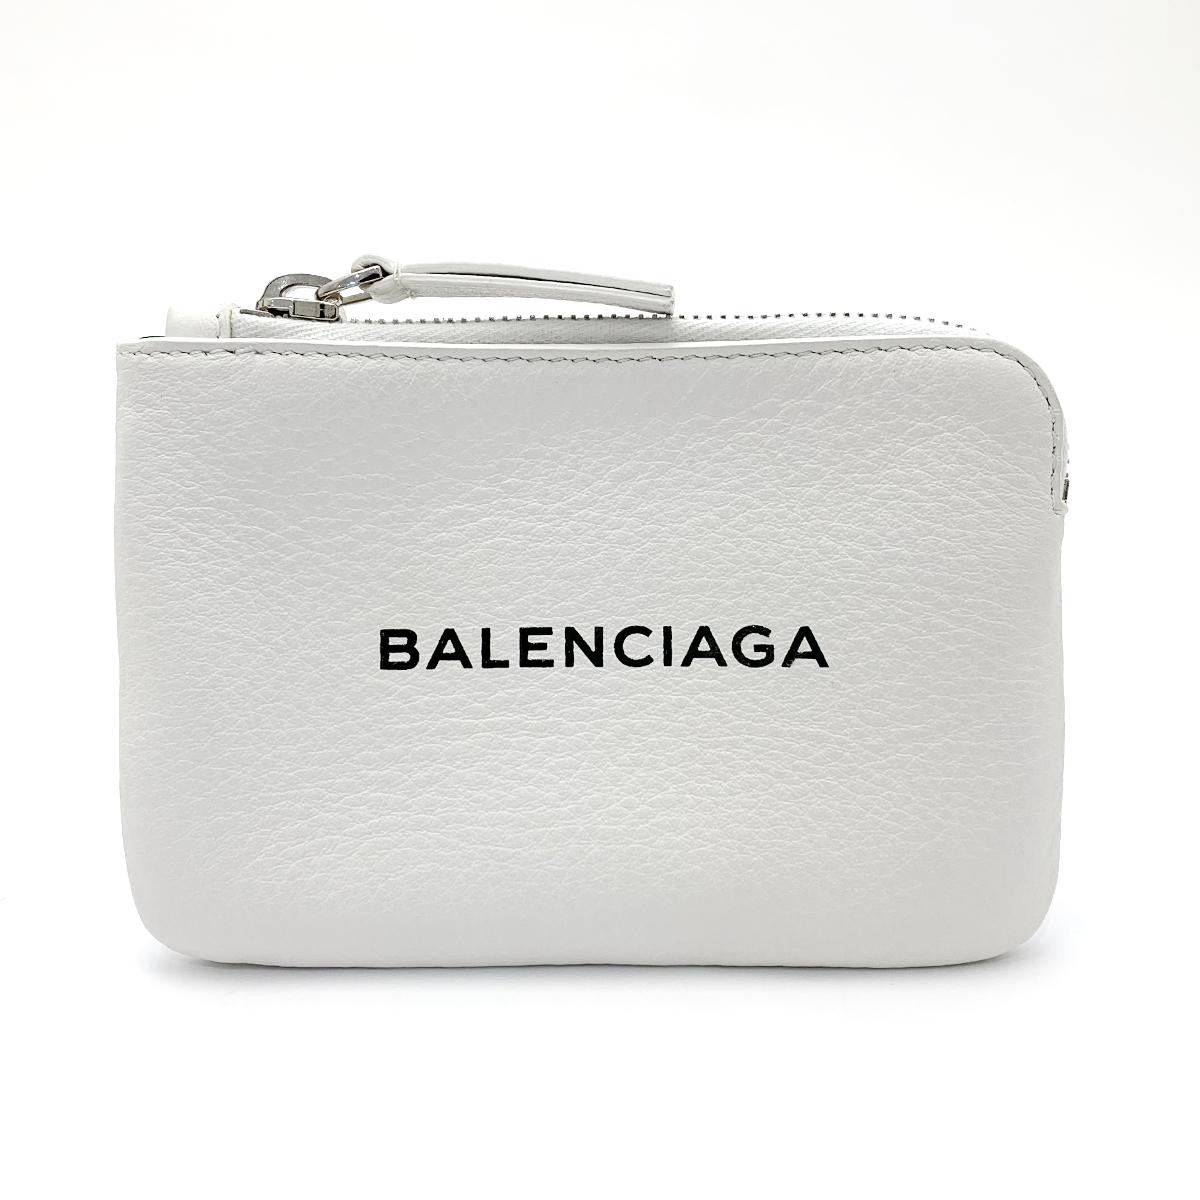 バレンシアガ(BALENCIAGA) エブリデイ コインケース 492464 レザー ホワイト ミニポーチ 保存袋